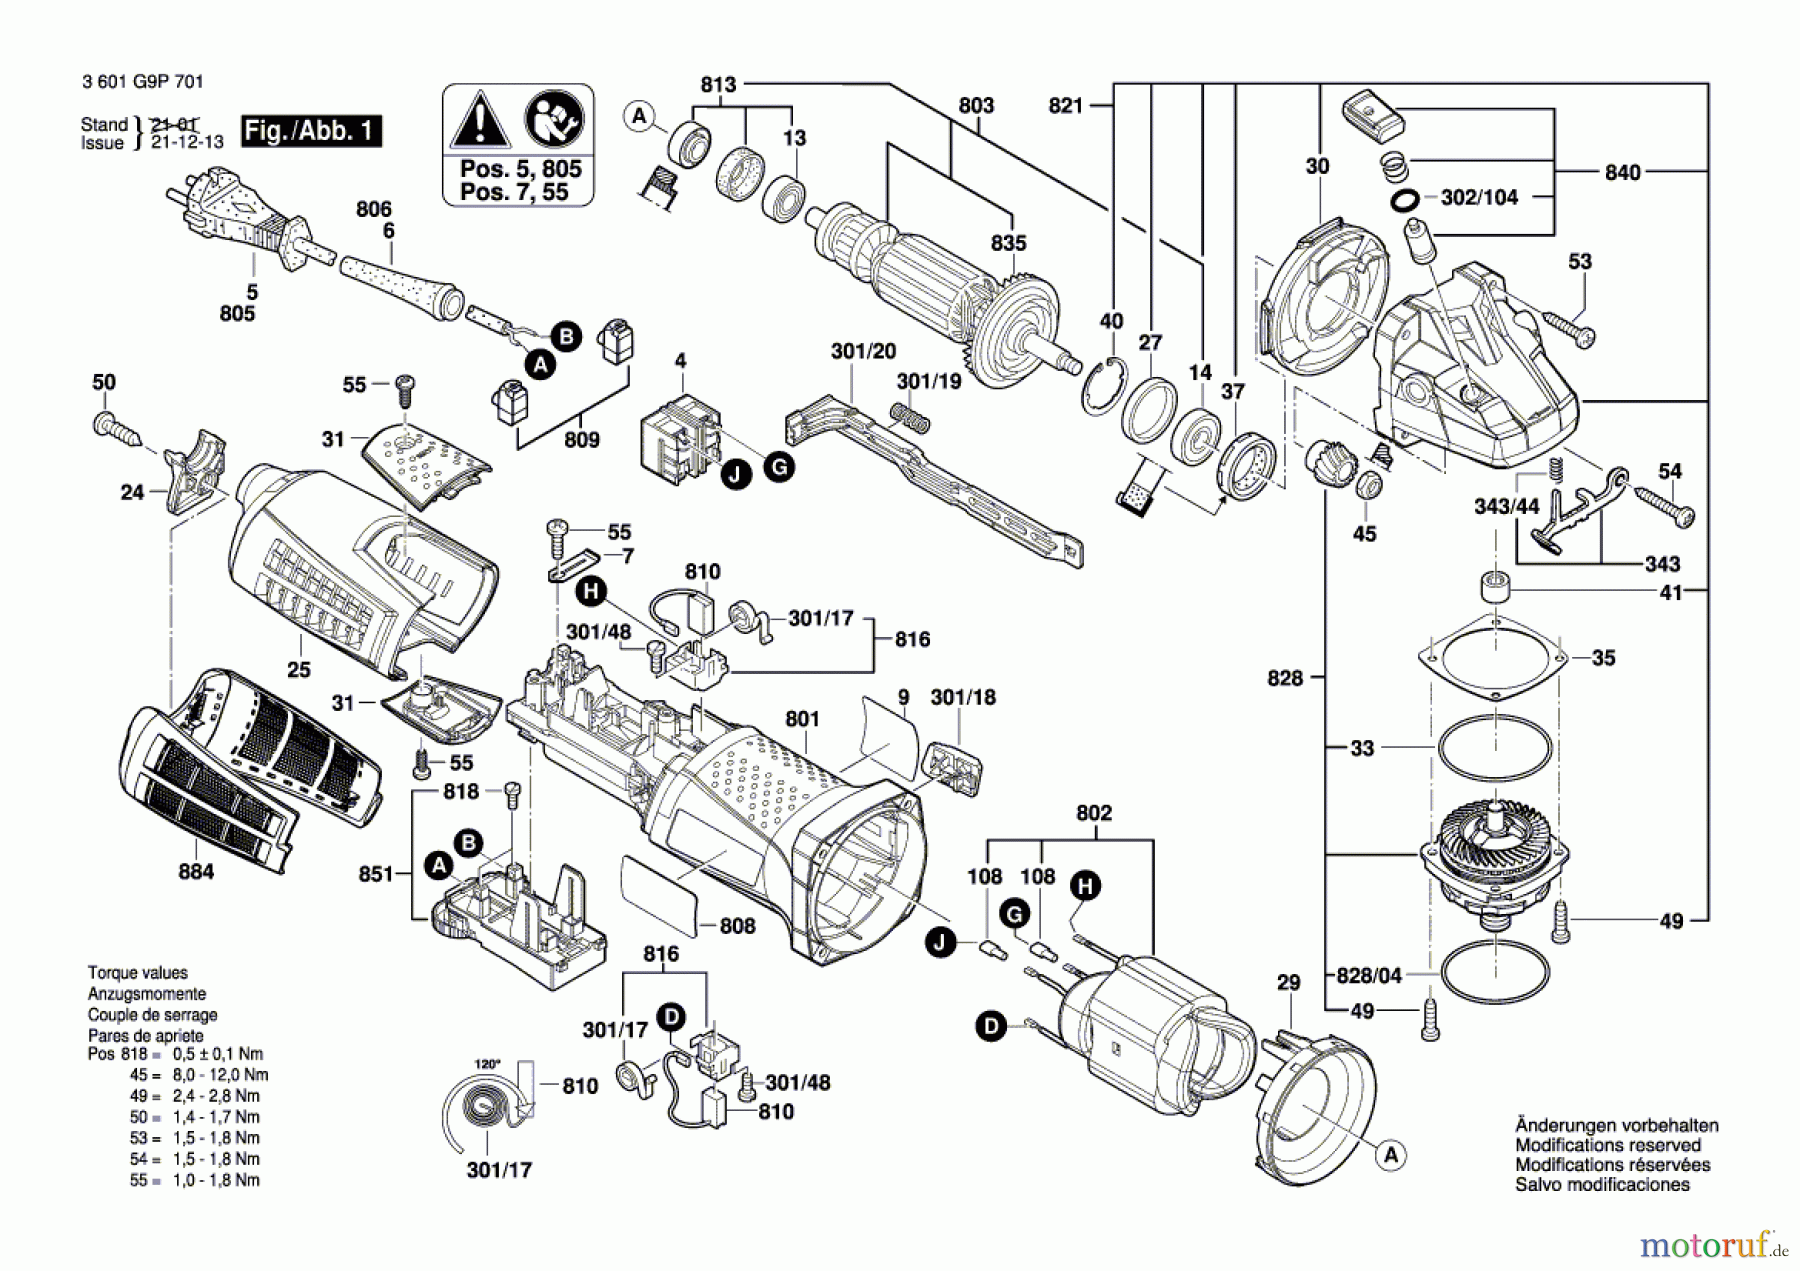  Bosch Werkzeug Winkelschleifer GWS19 CIE 125mm (3M) Seite 1